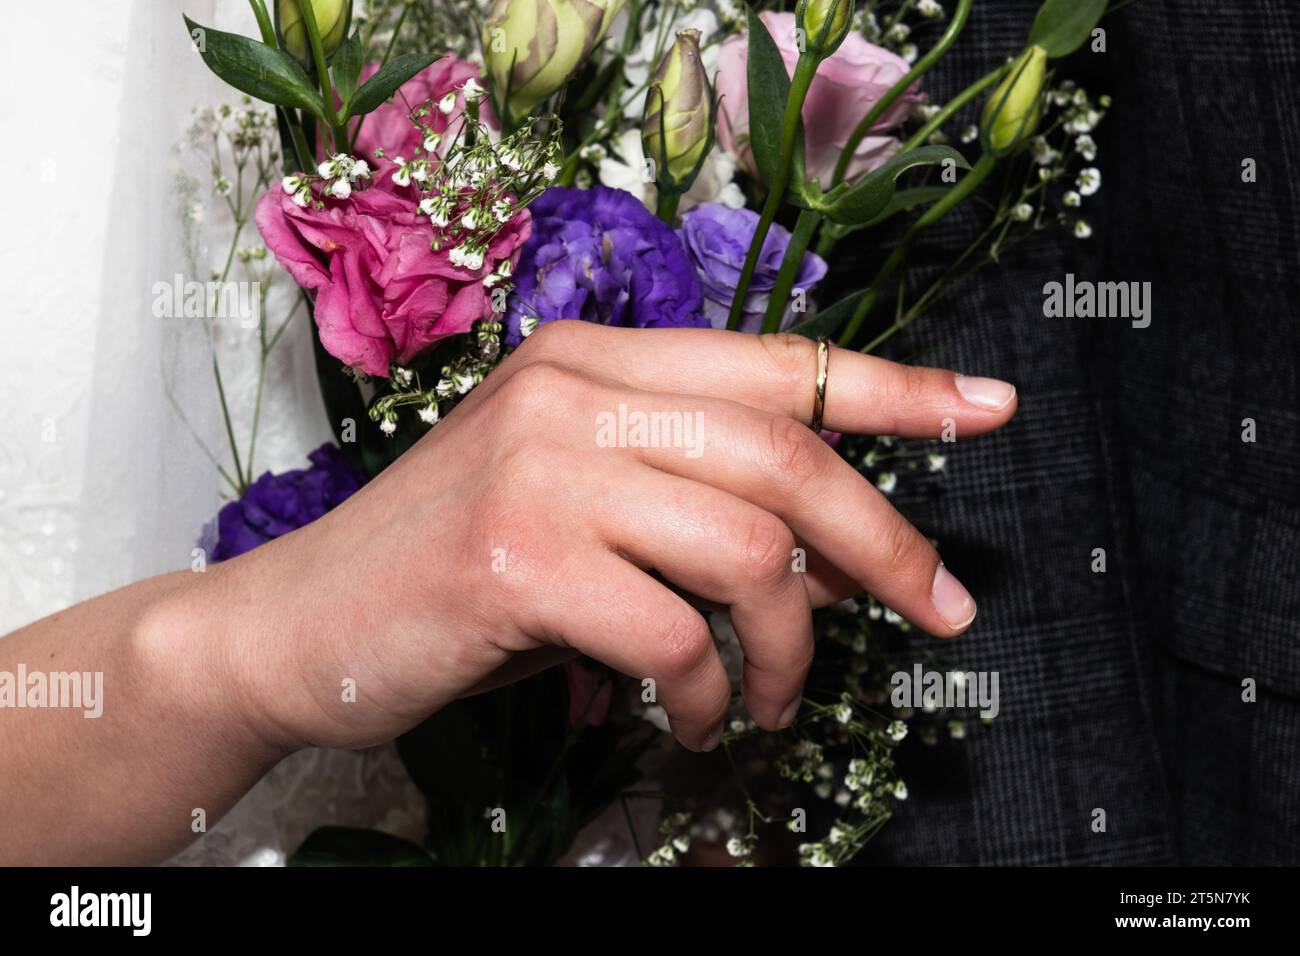 Una sposa ebrea tiene il dito indice con l'anello posto sulla mano dallo sposo durante una celebrazione di nozze ebraiche in Israele. Foto Stock